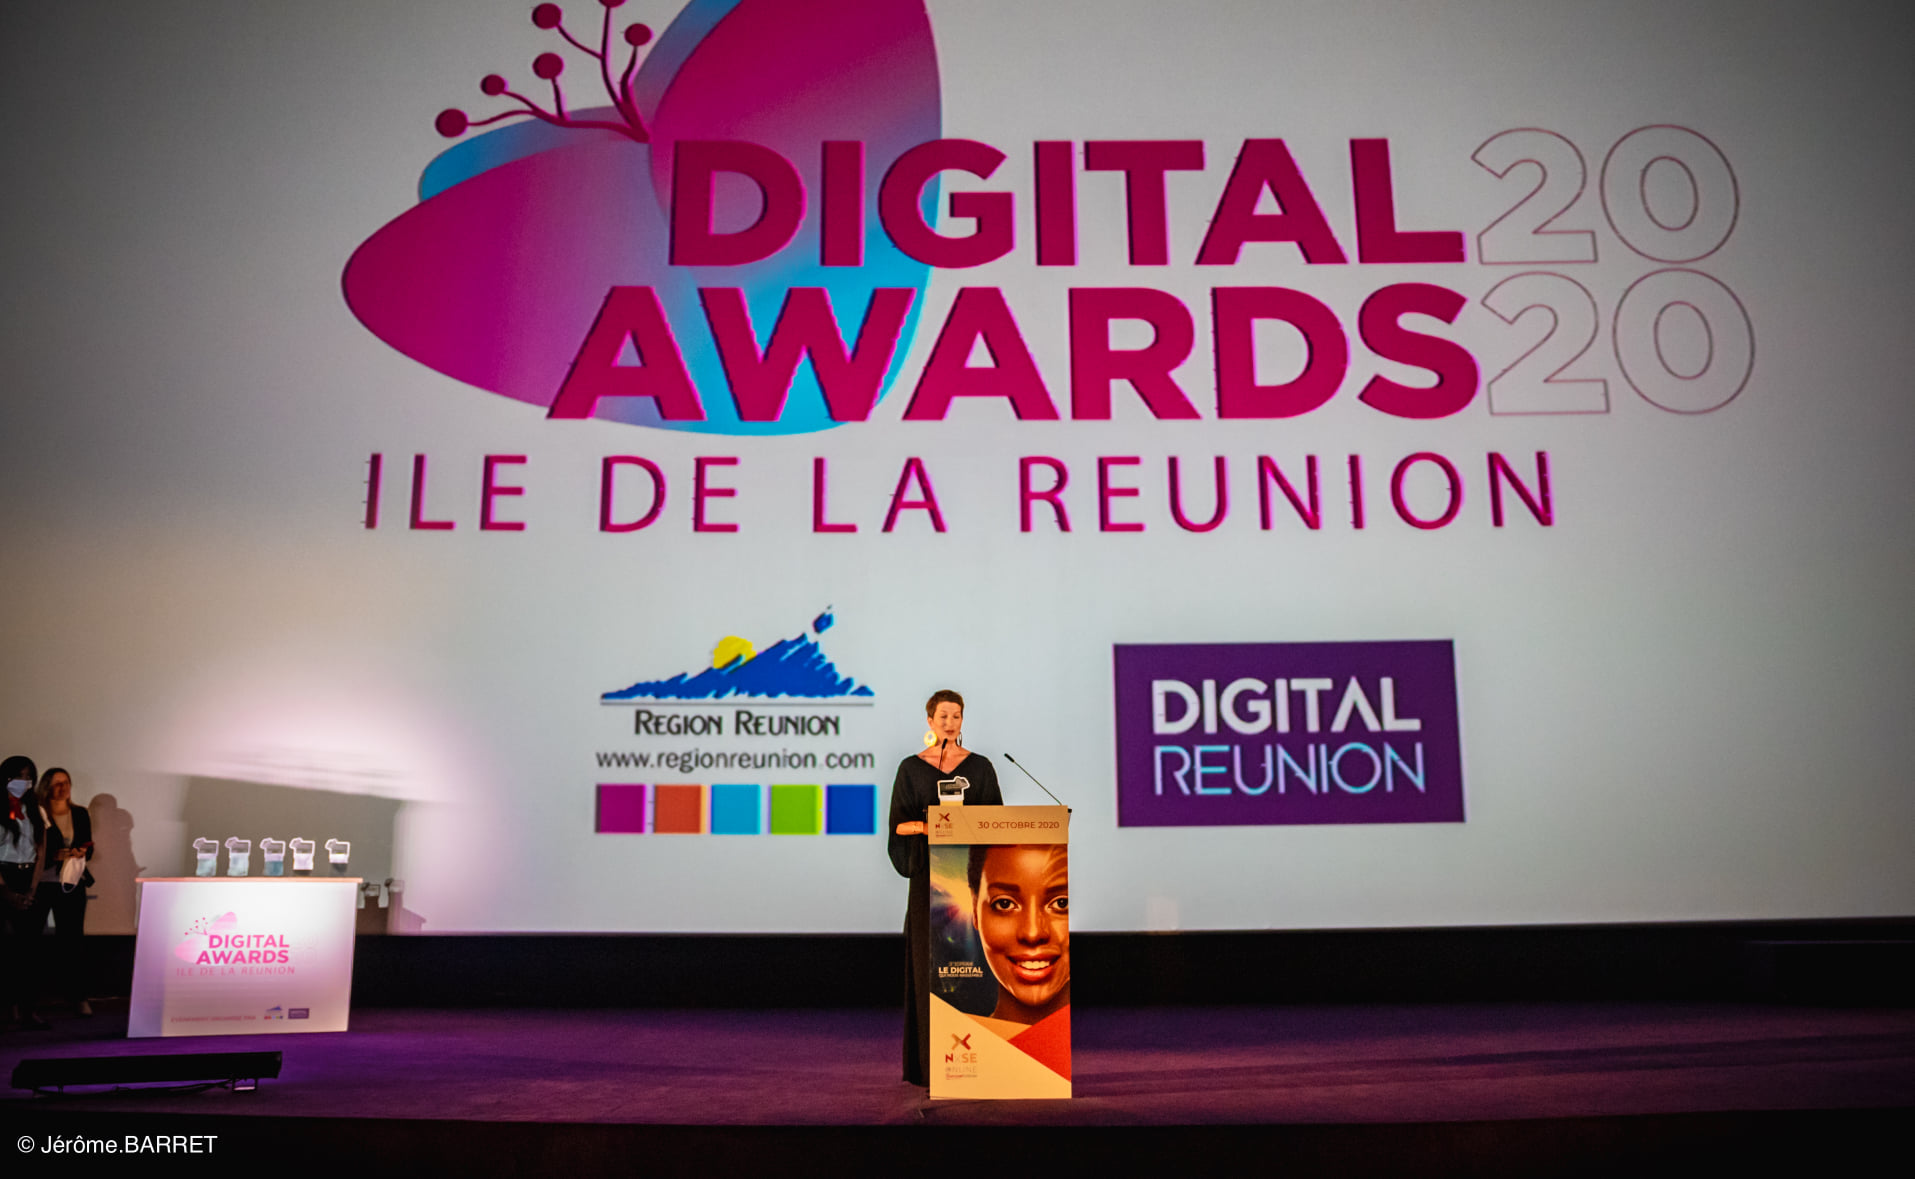 Digital Réunion en partenariat avec la Région Réunion annoncent la 2nde édition des Digital Awards